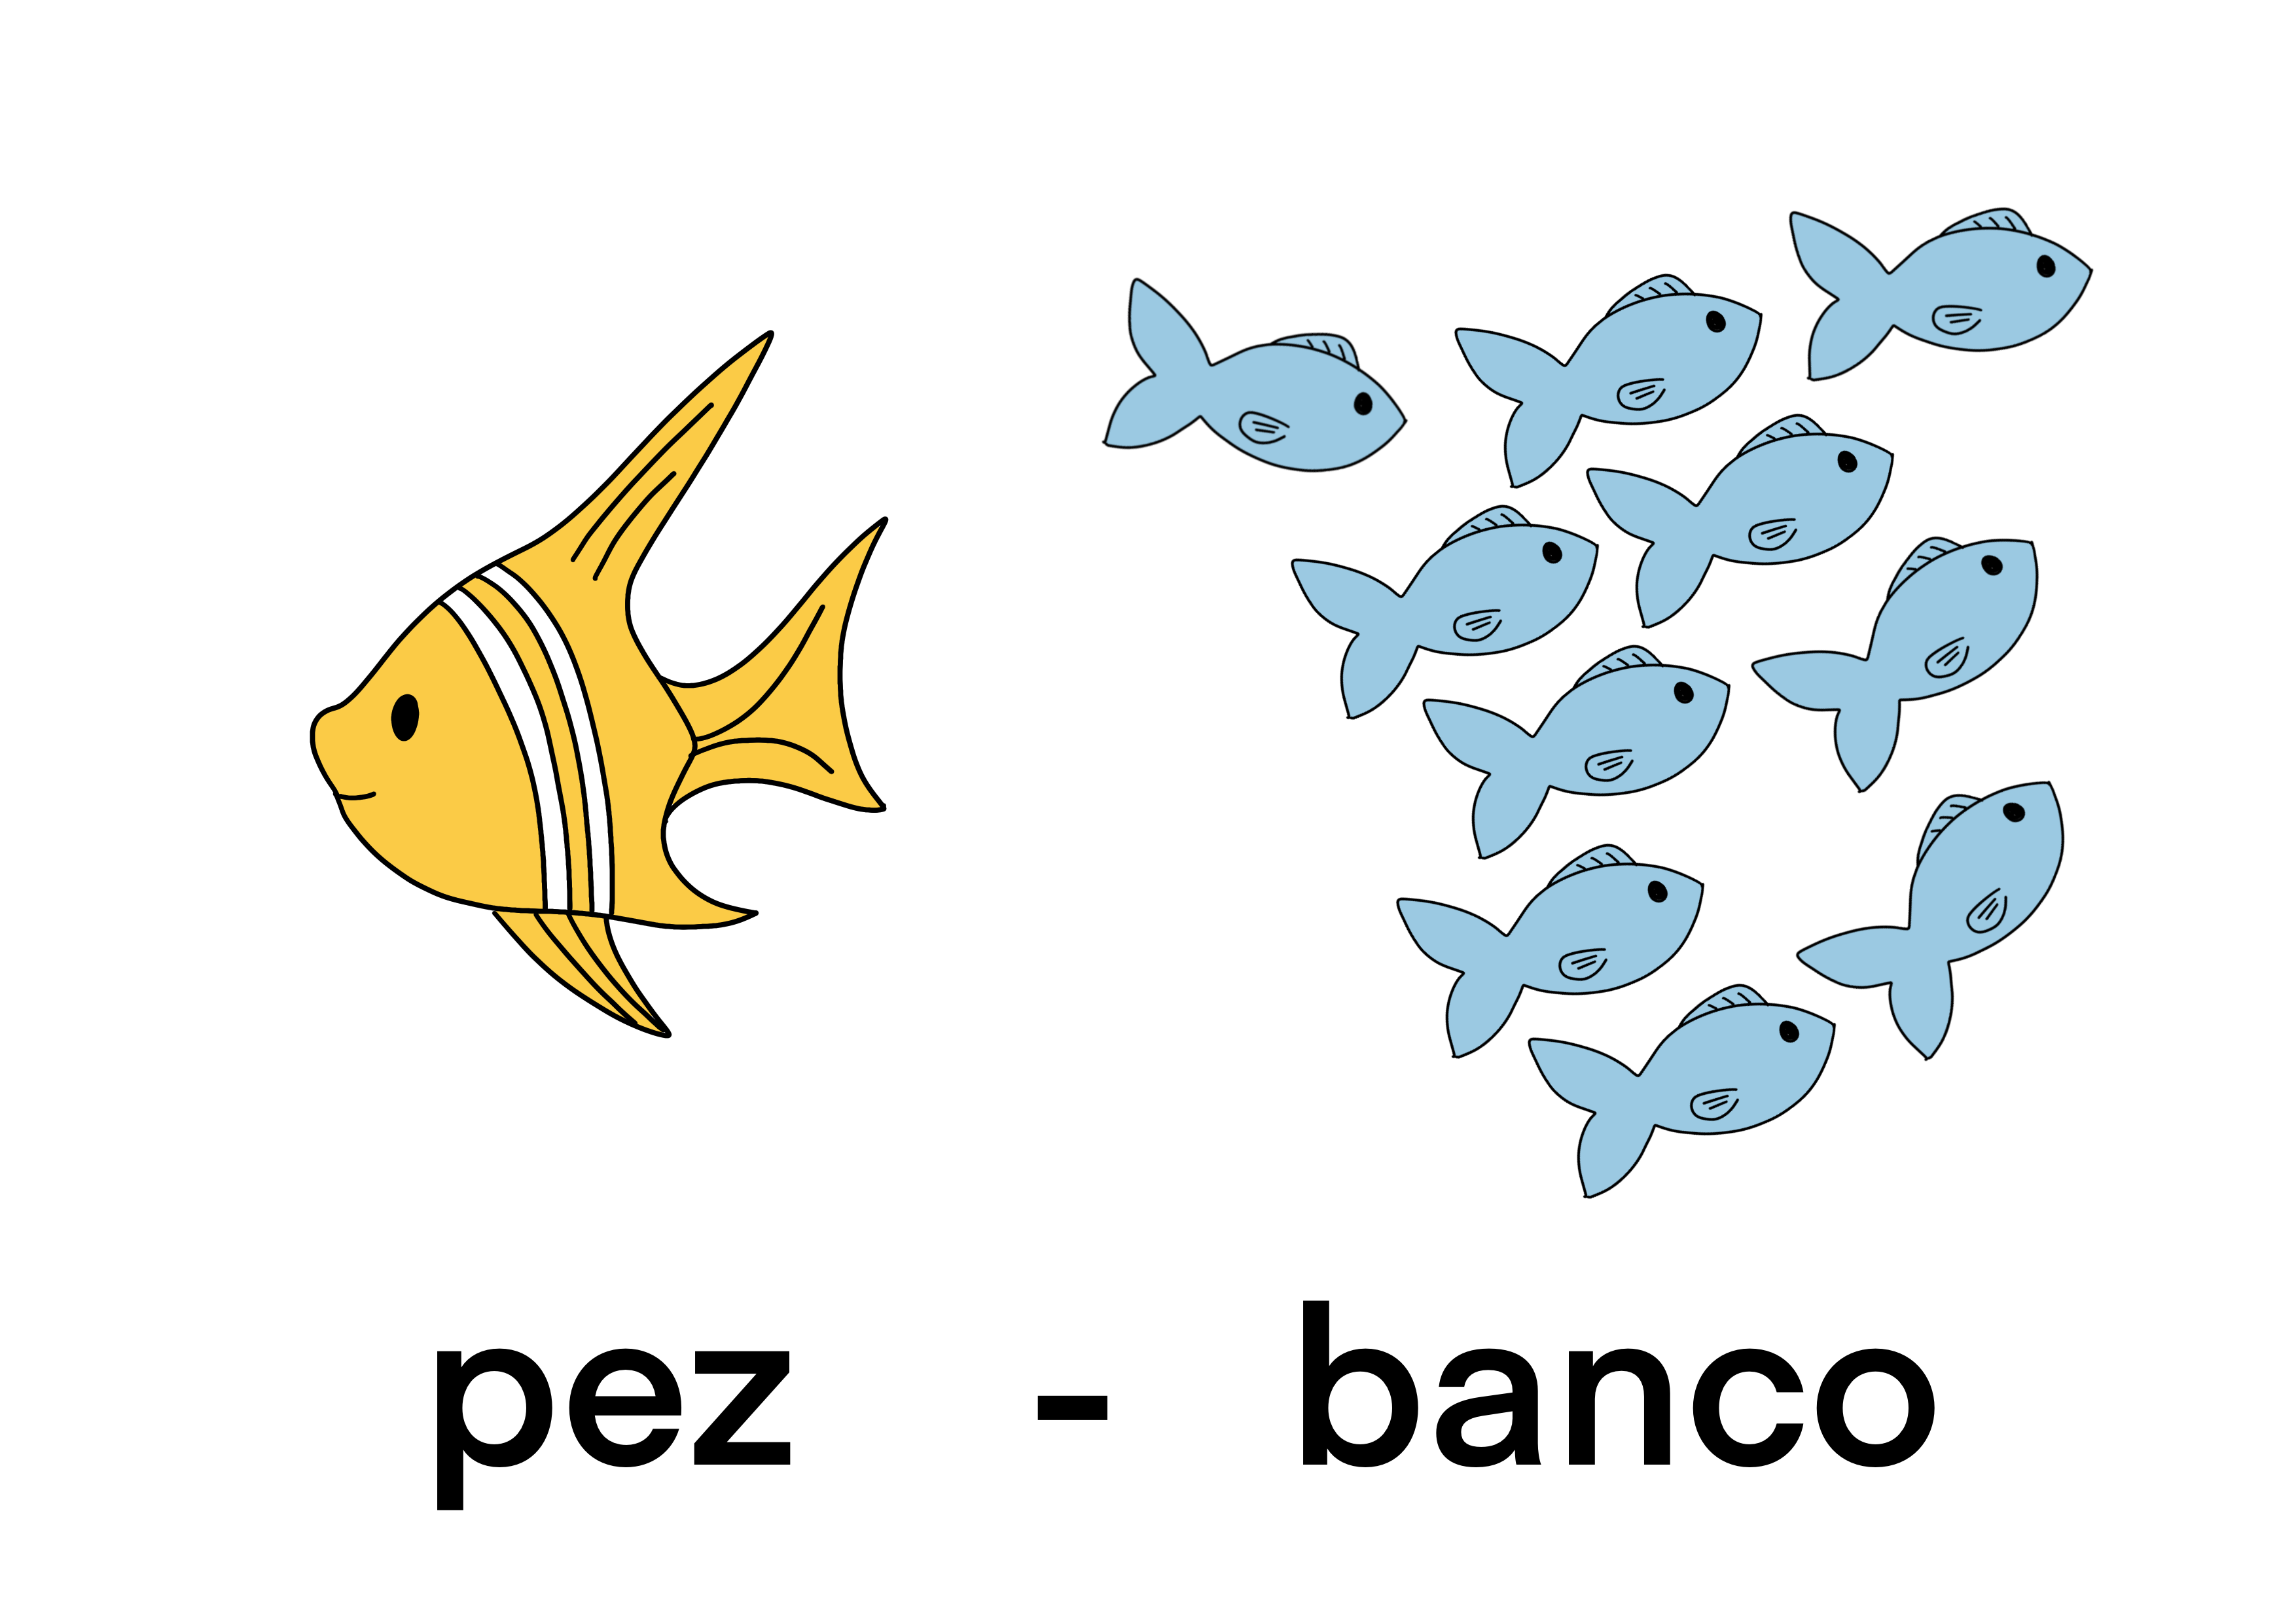 pez - banco